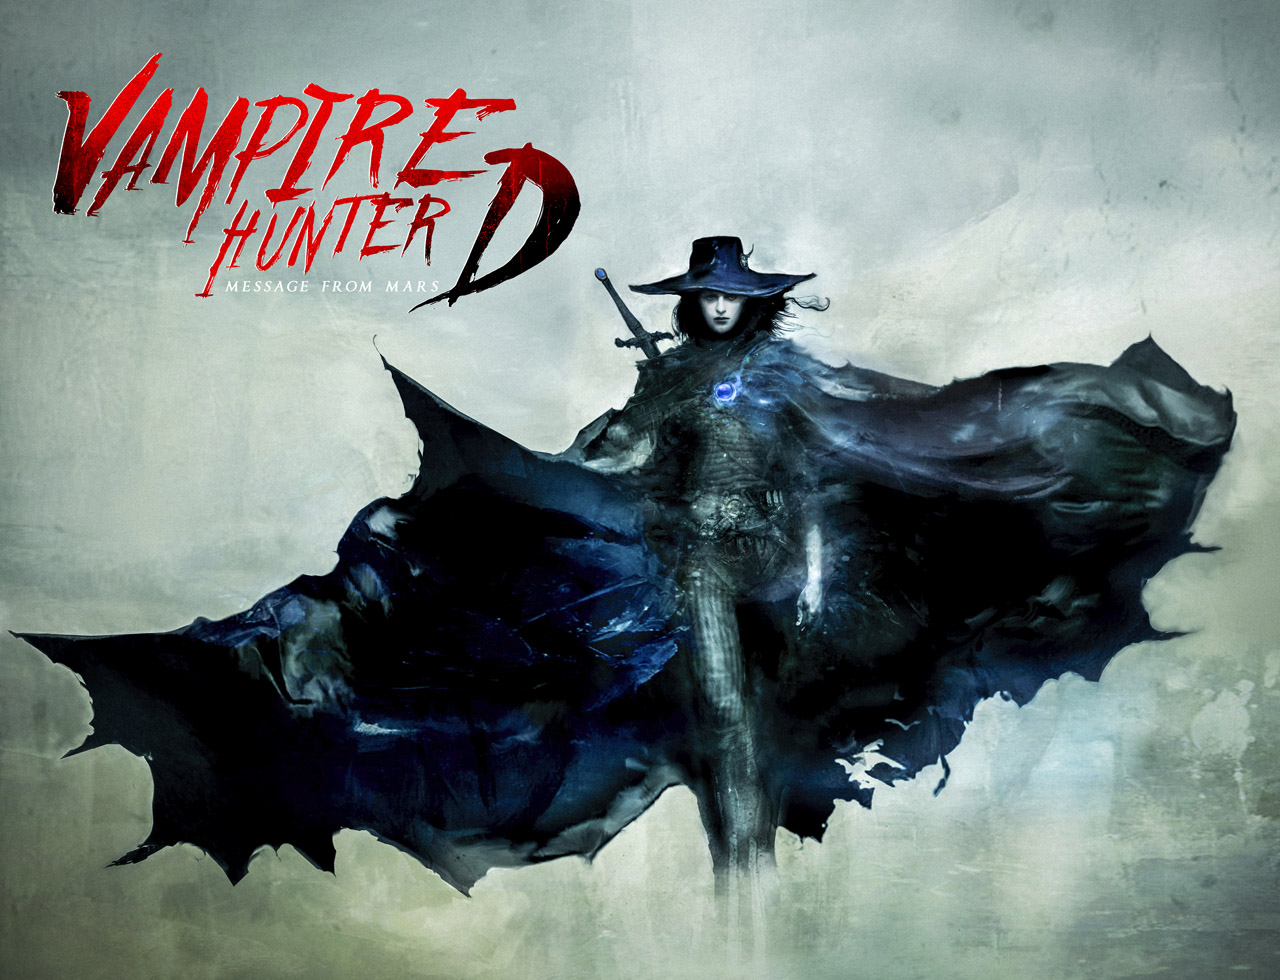 Vampire Hunter D #6